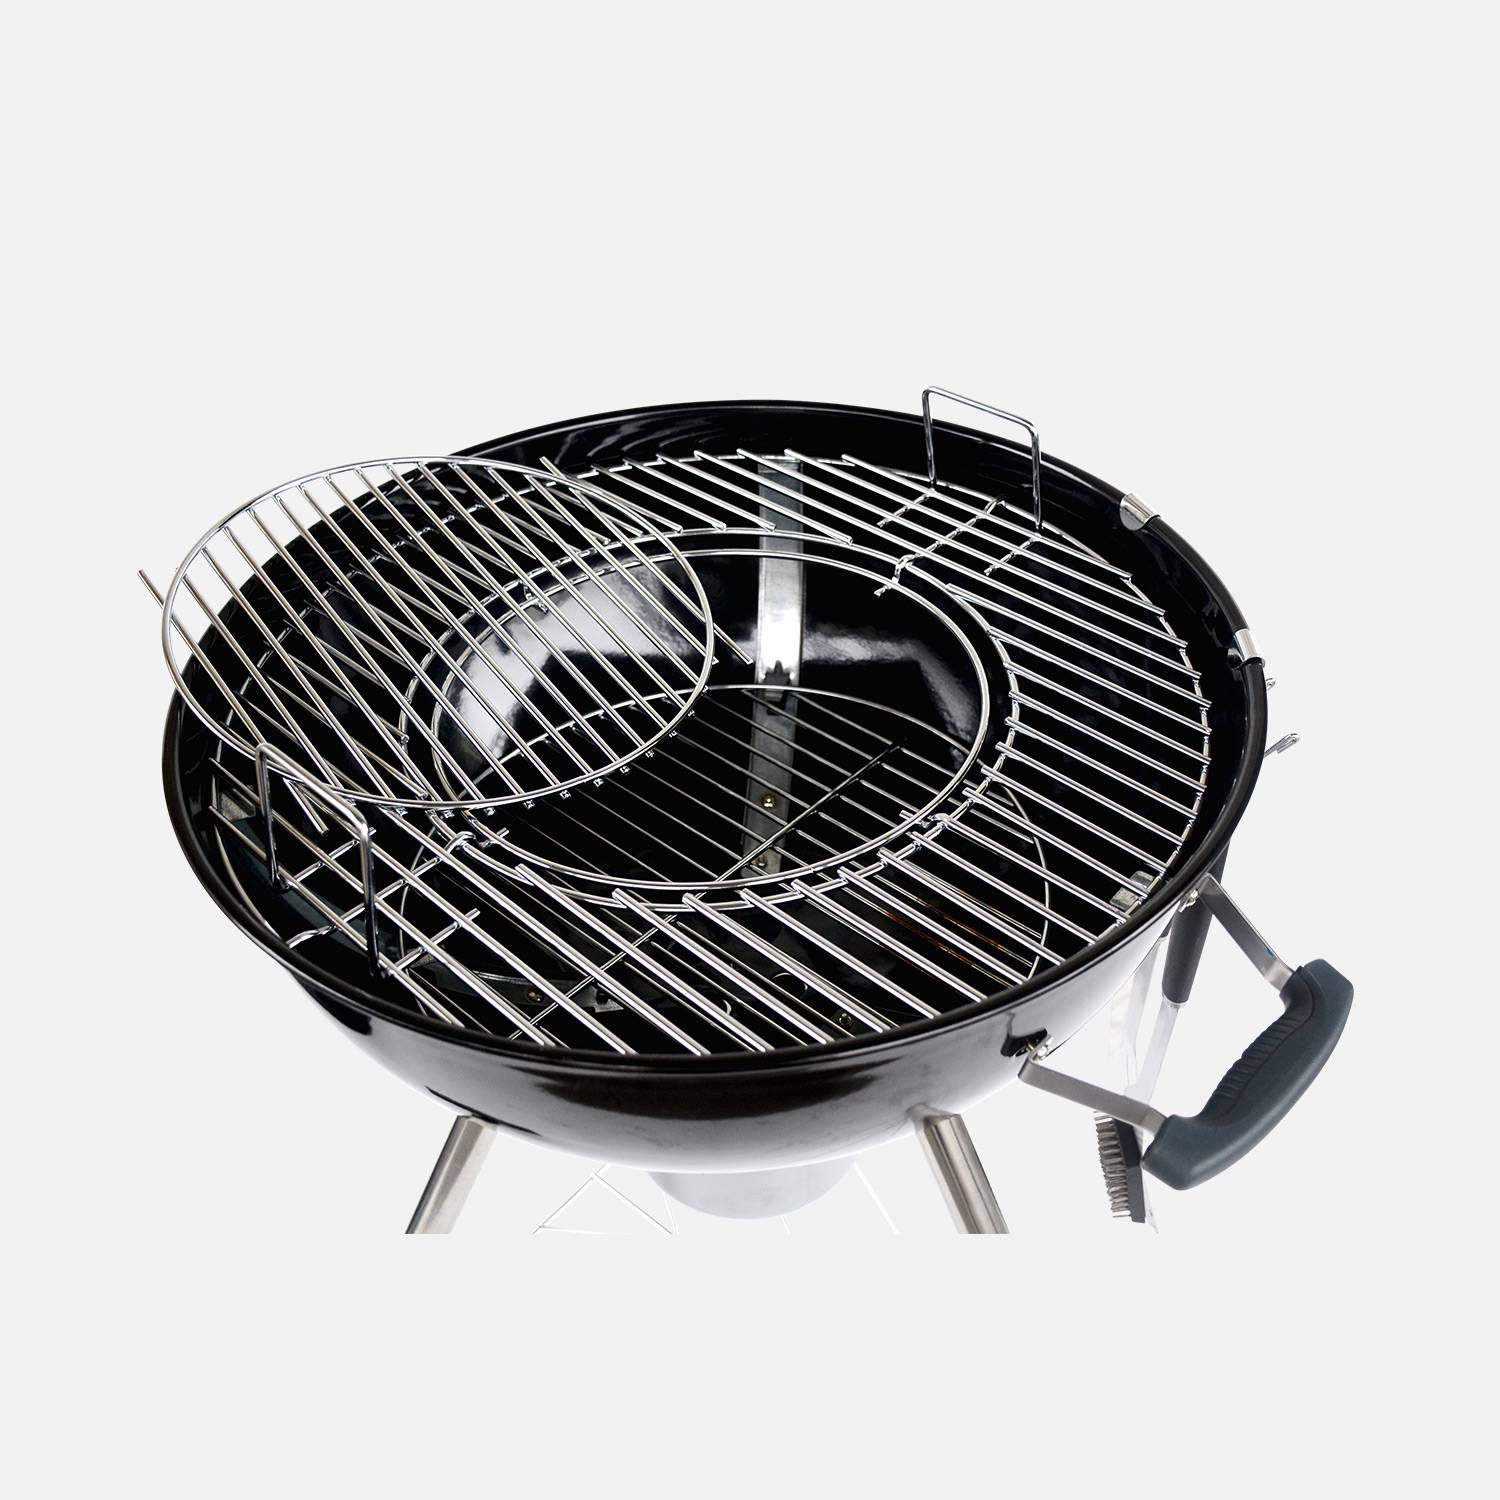 Barbecue PREMIUM charbon de bois Ø57cm, Charles + accessoires - noir émaillé, avec grille amovible, aérateurs, fumoir, récupérateur de cendres, housse, rack et ustensiles + souffleur offert Photo8